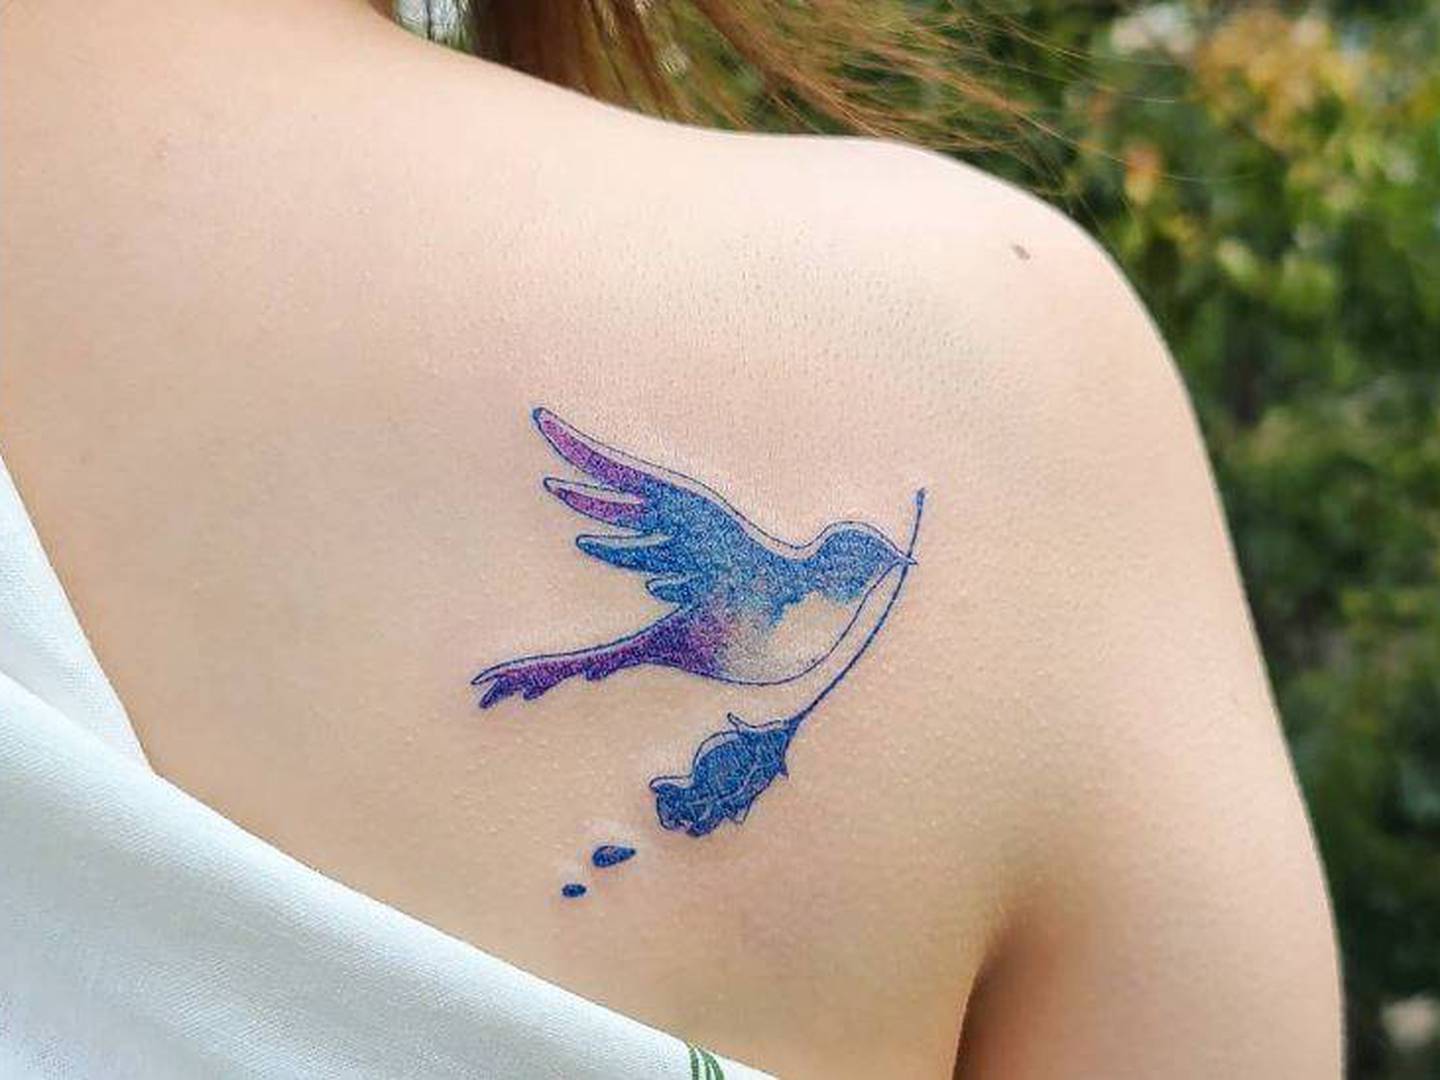 Tatuajes de aves para mujeres que aman y defienden su libertad